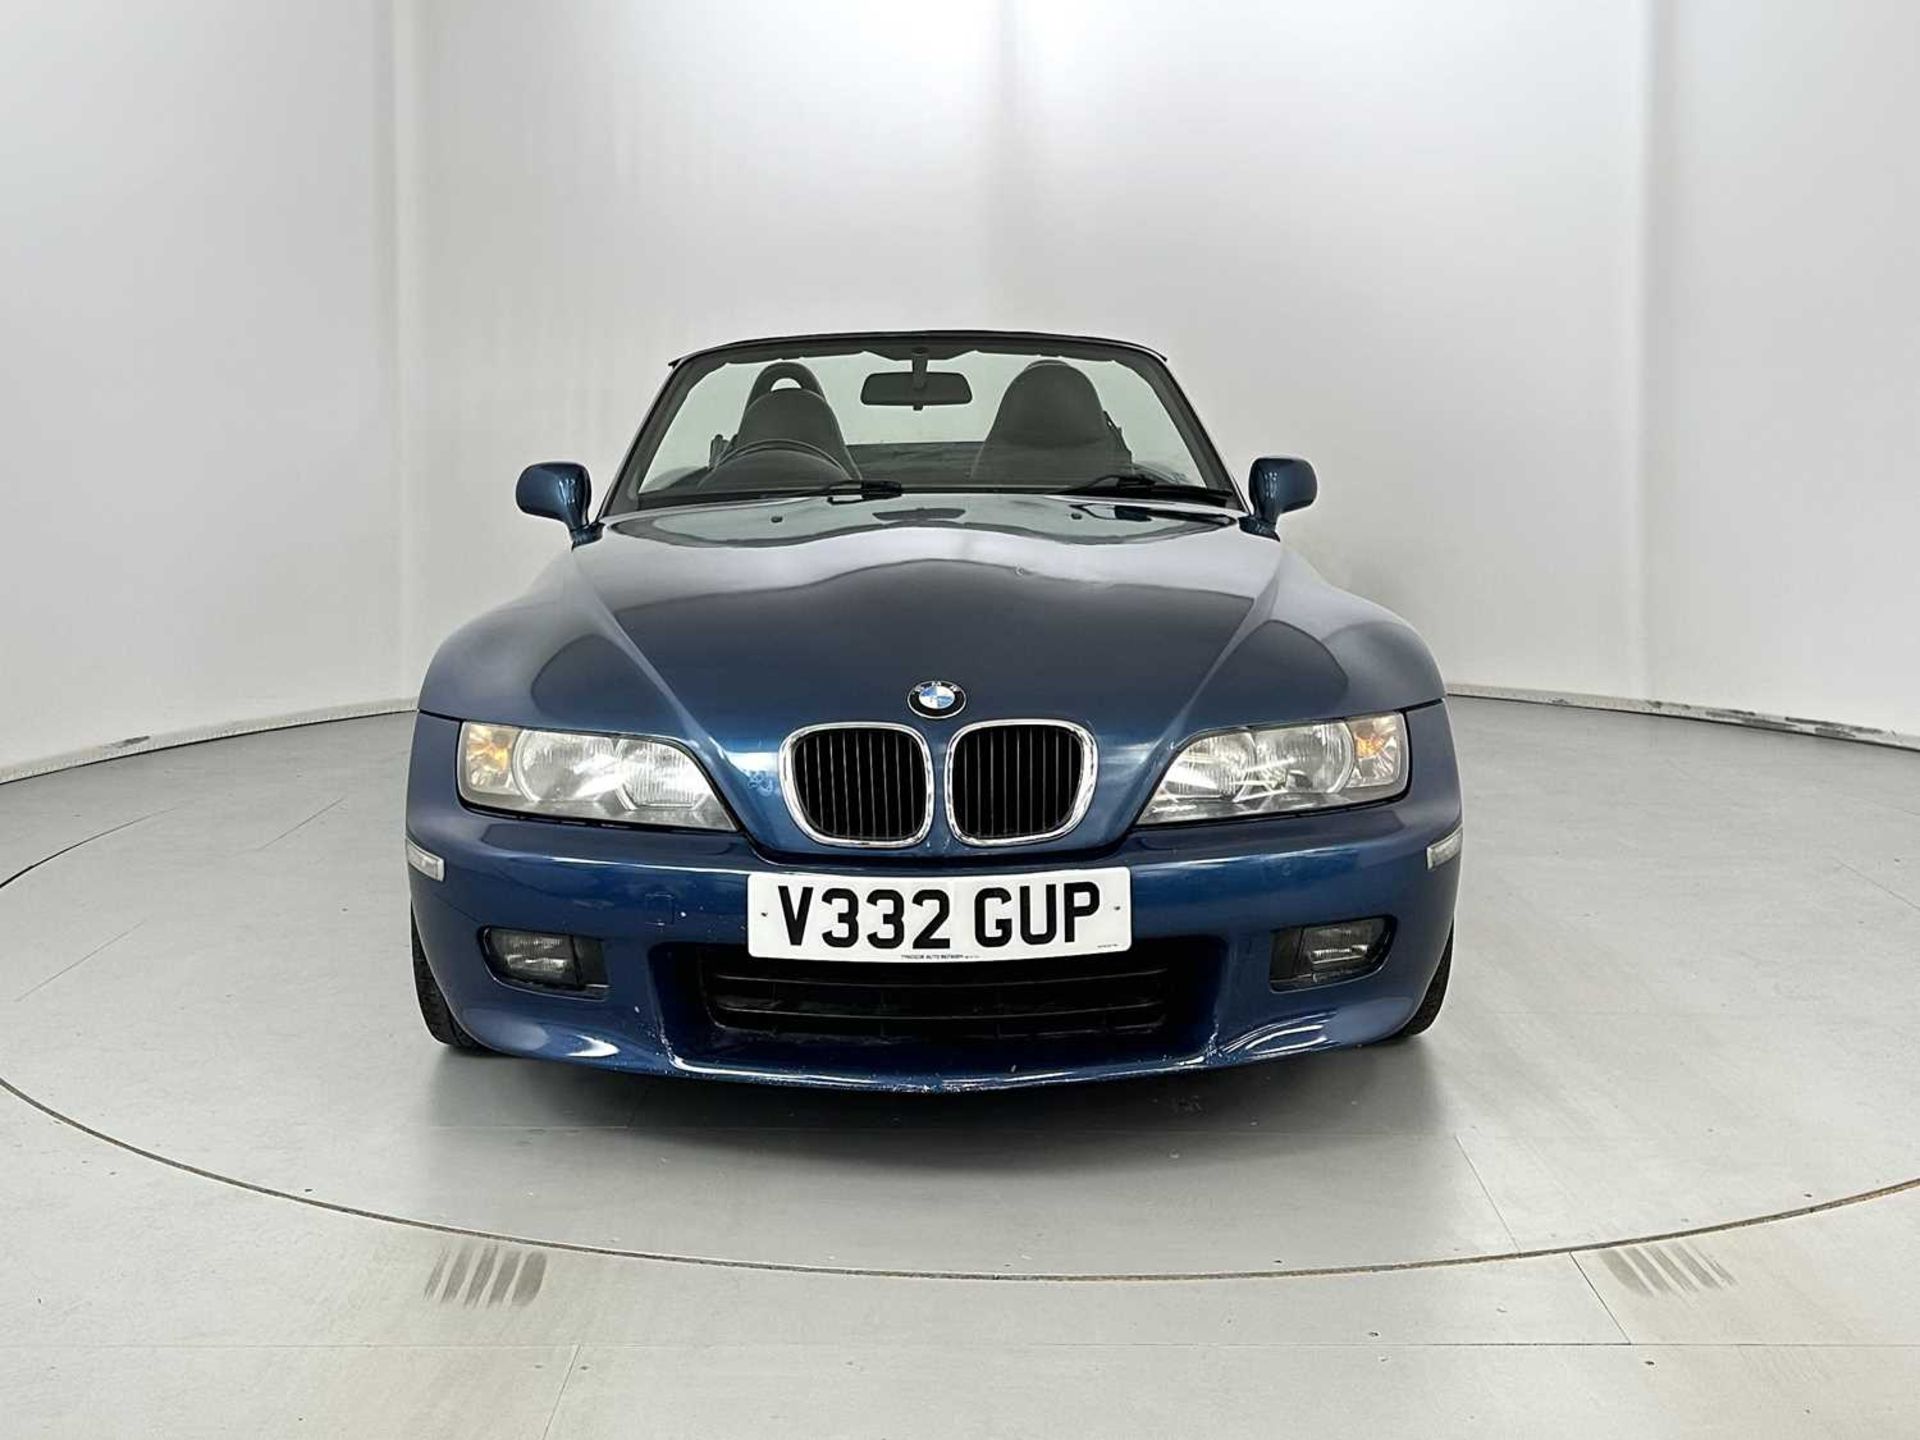 2000 BMW Z3 - Image 2 of 28